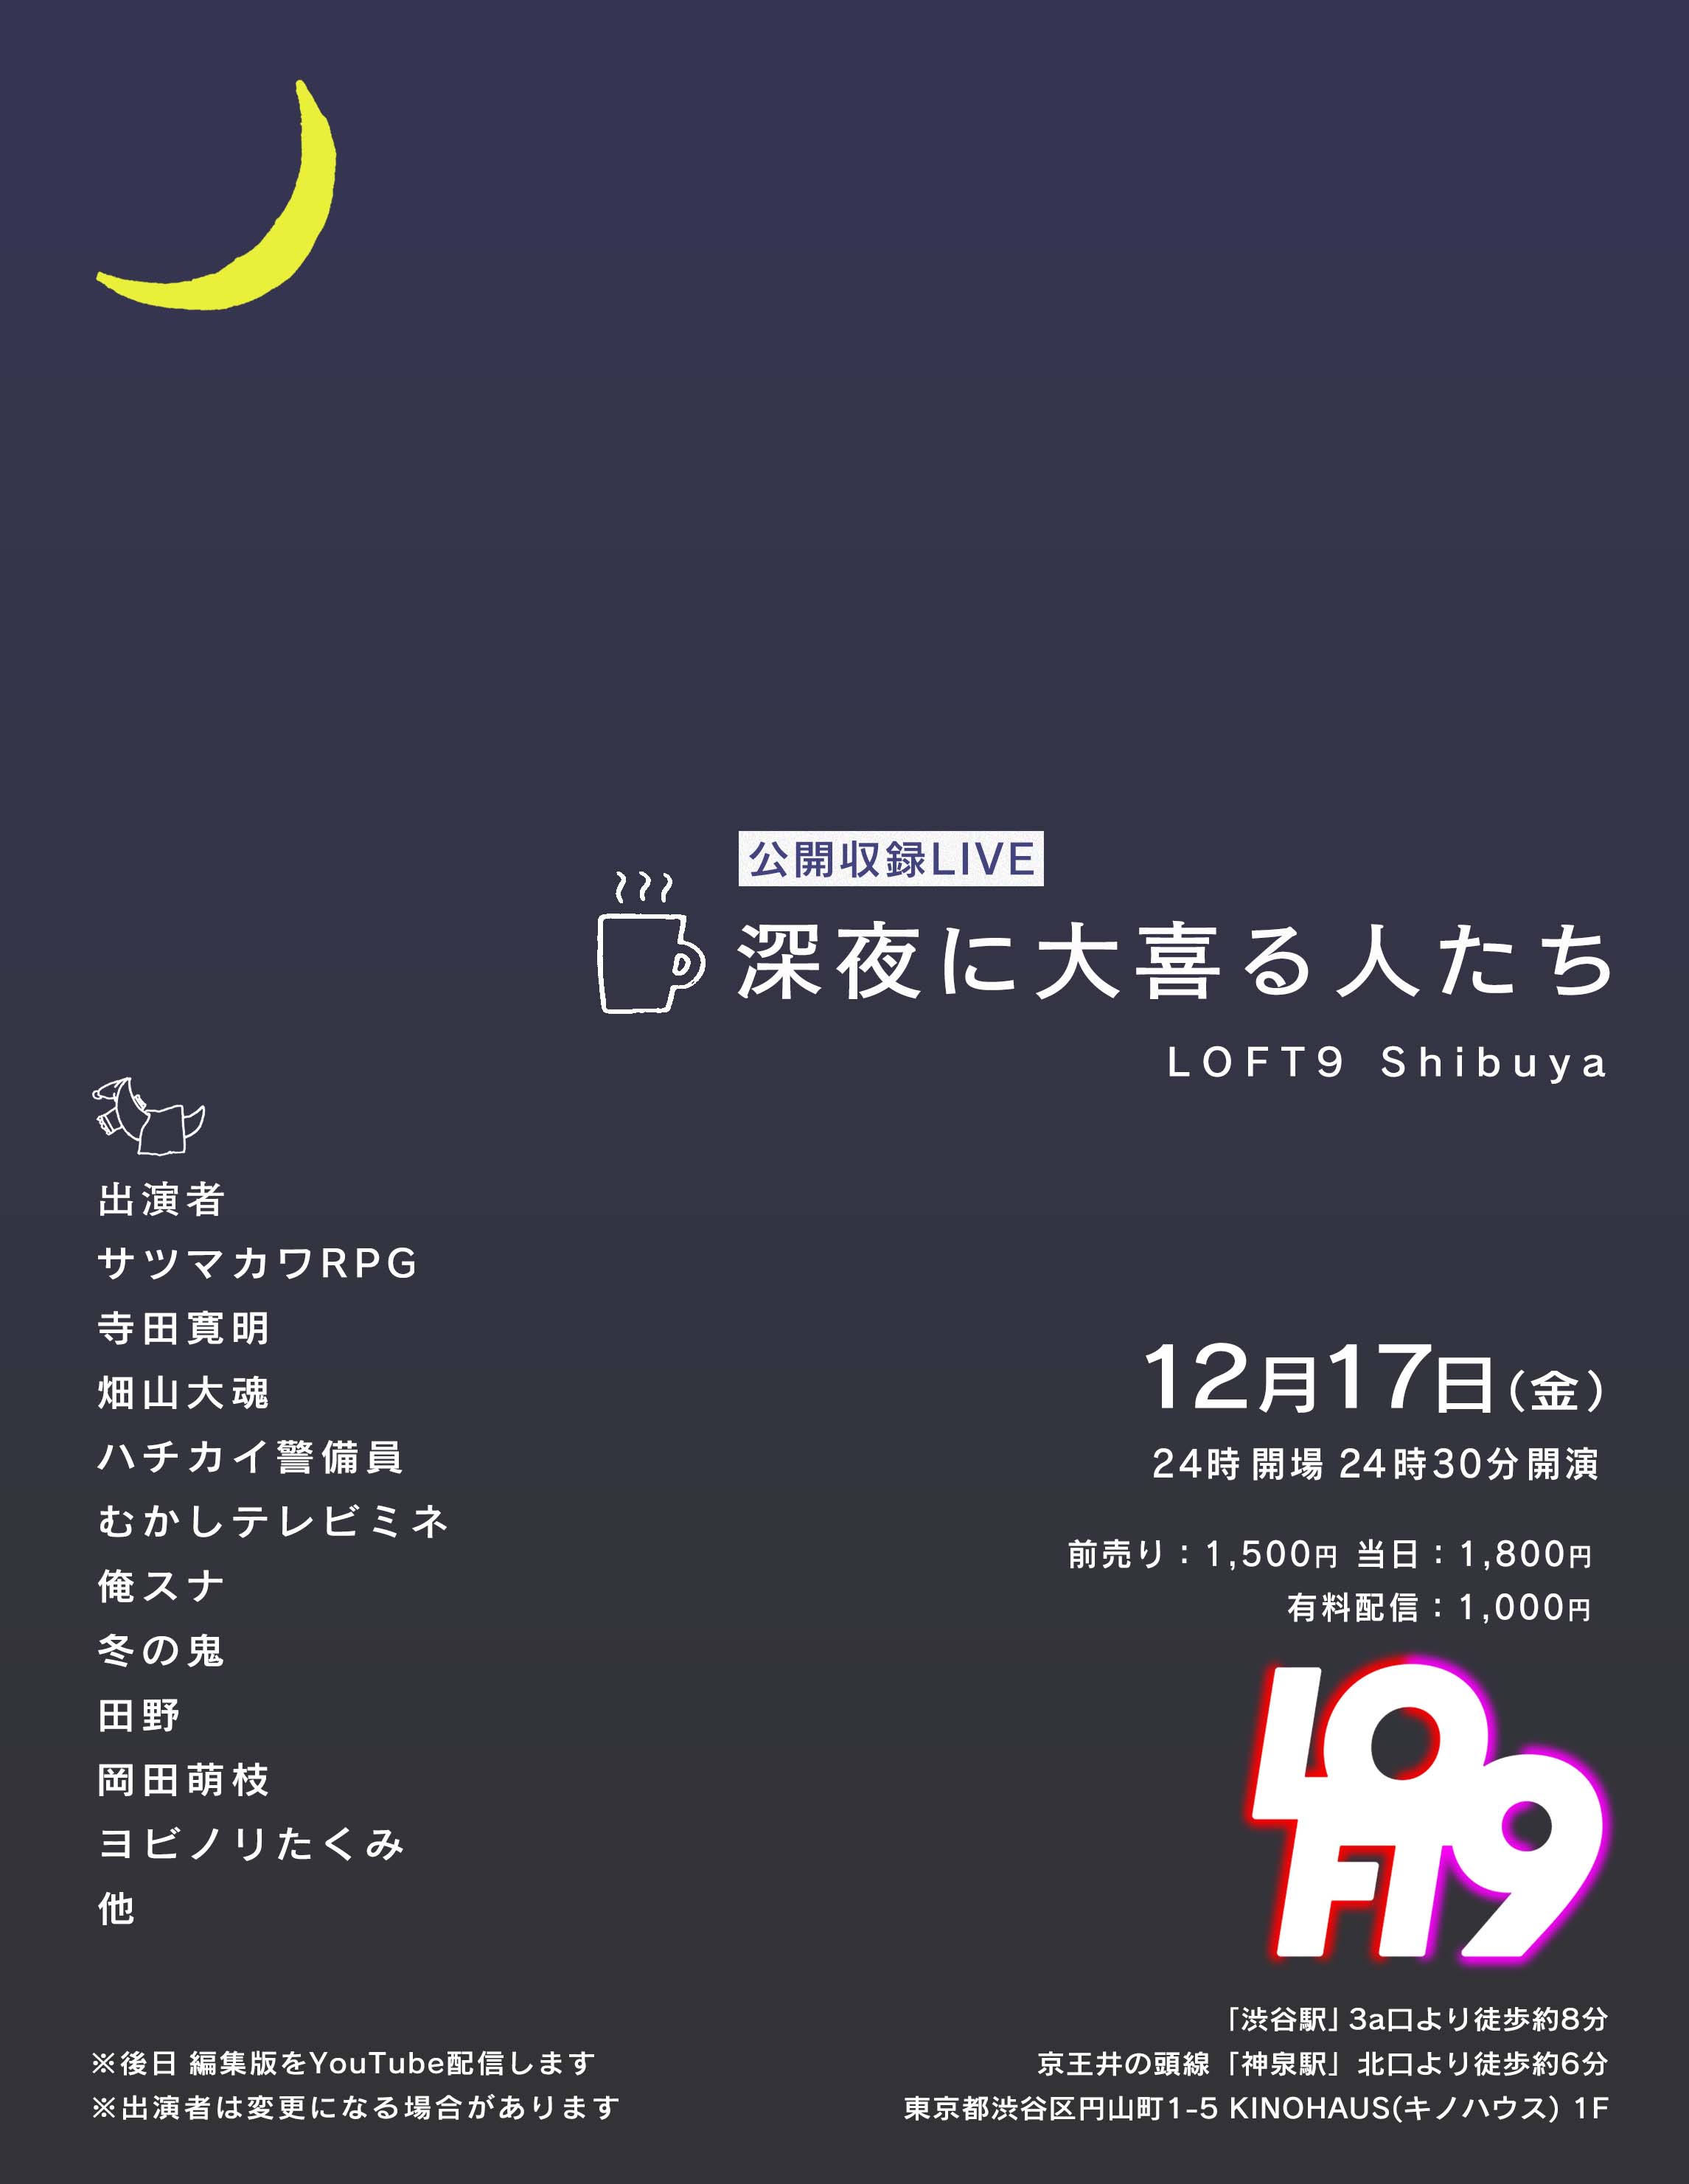 Loft9 Shibuya 告知12 17 金 Op24 00 St24 30 深夜に大喜る人たち Loft9 Shibuya T Co Syoigfju9i Youtubeチャンネル 大喜 る人たち がloft9にて初のオールナイトライブを開催 芸人と大喜利プレイヤーが入り混じって大喜利を披露します